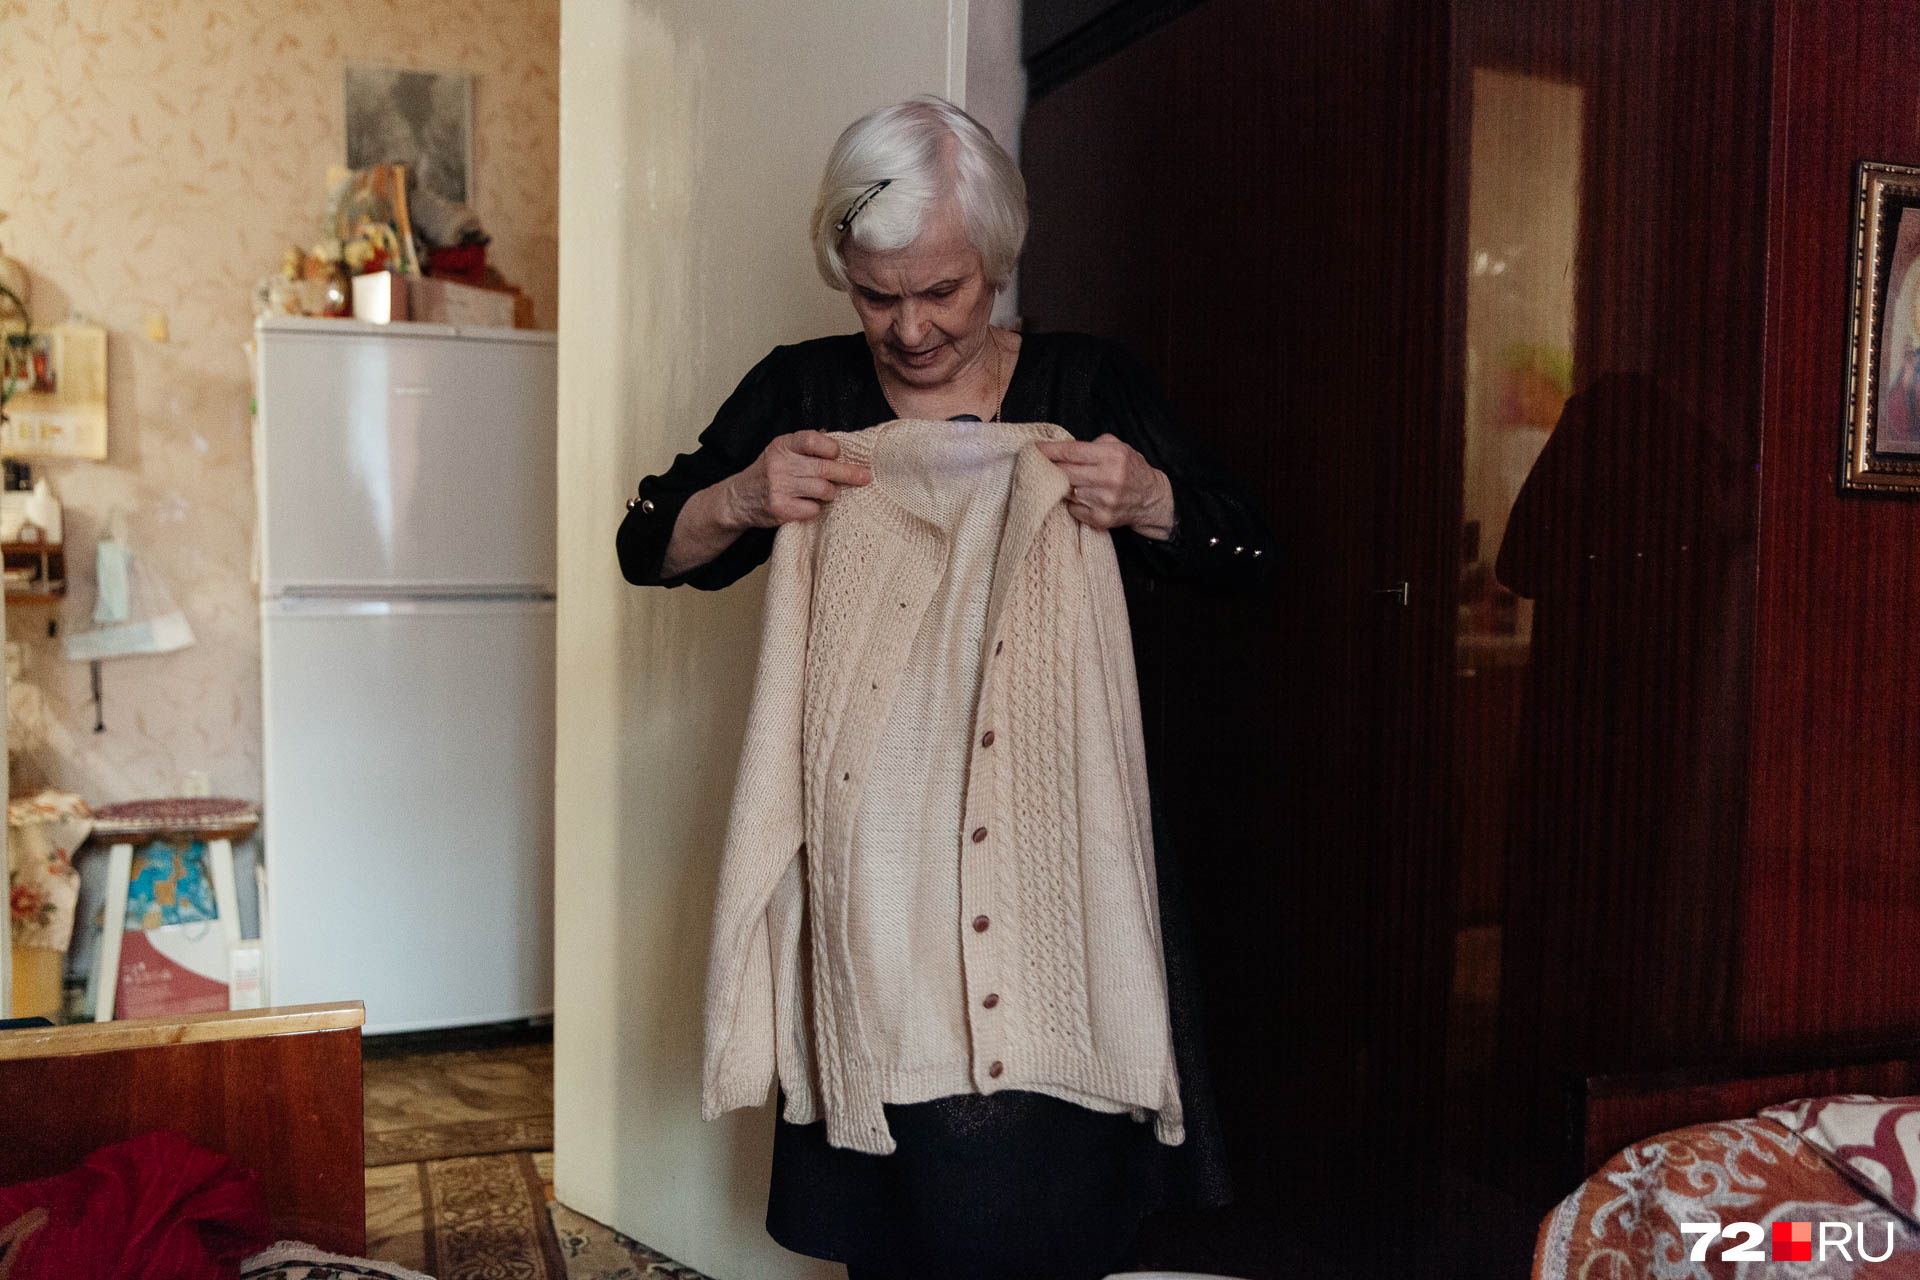 Клара Ивановна любит шить и вязать. К нашему приходу она нарядилась: надела красивое блестящее платье